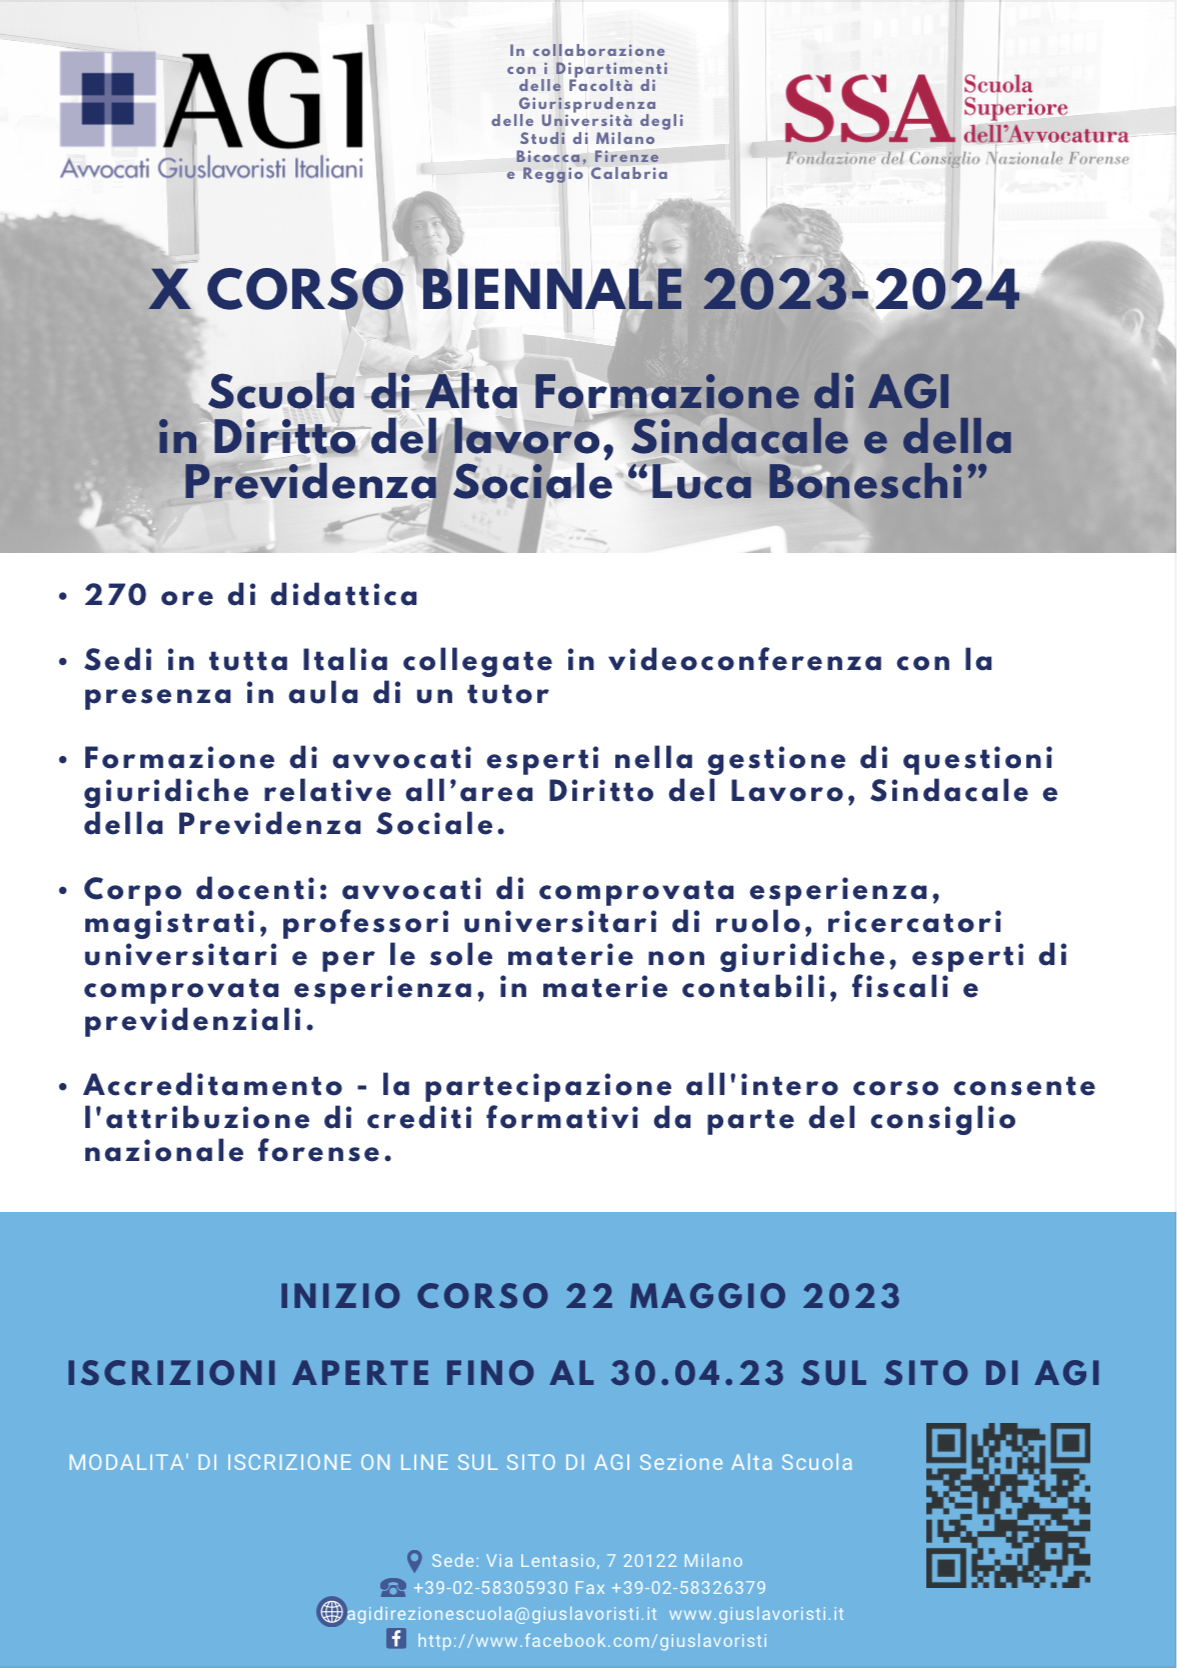 SCUOLA DI ALTA FORMAZIONE X BIENNIO 2023-2024 - ISCRIZIONI PROROGATE 